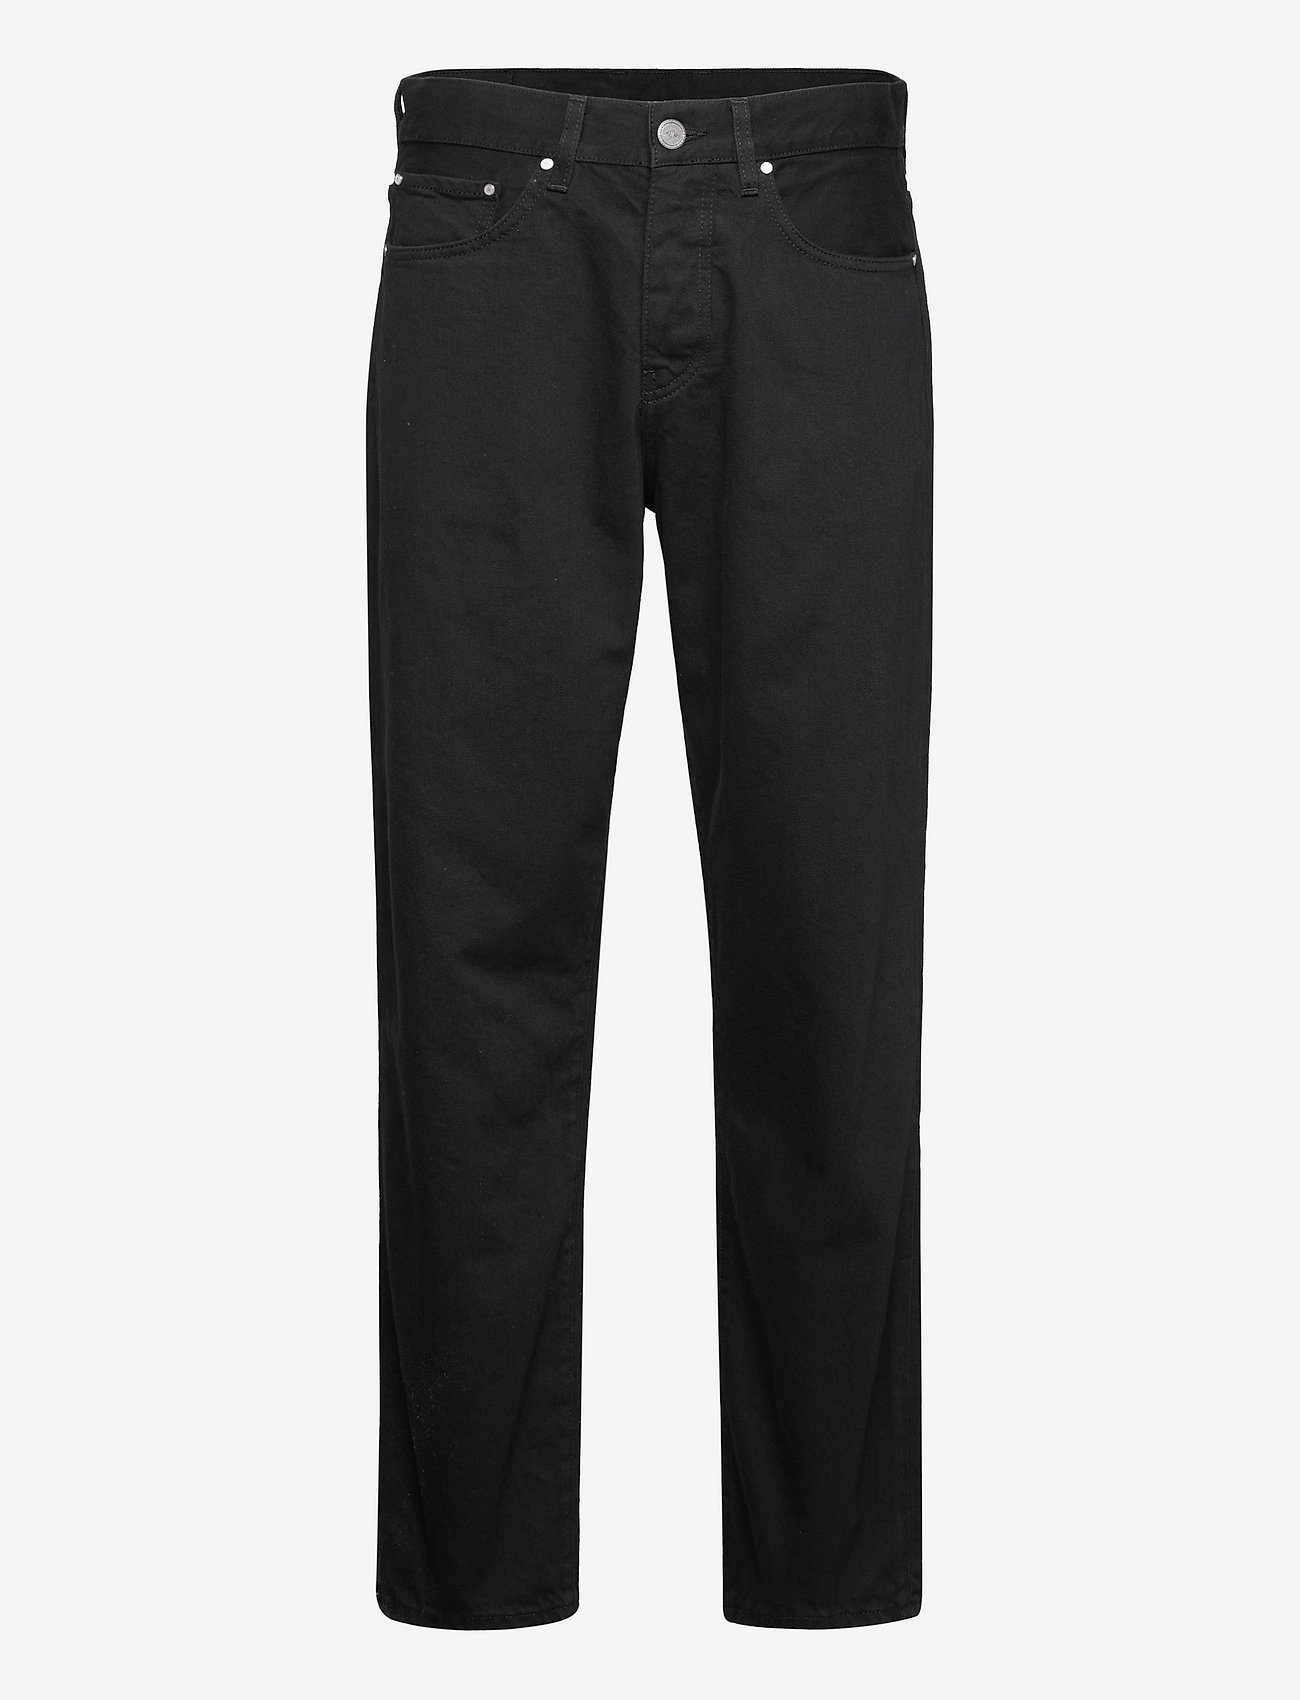 HAN Kjøbenhavn - Relaxed Jeans - black black - 0